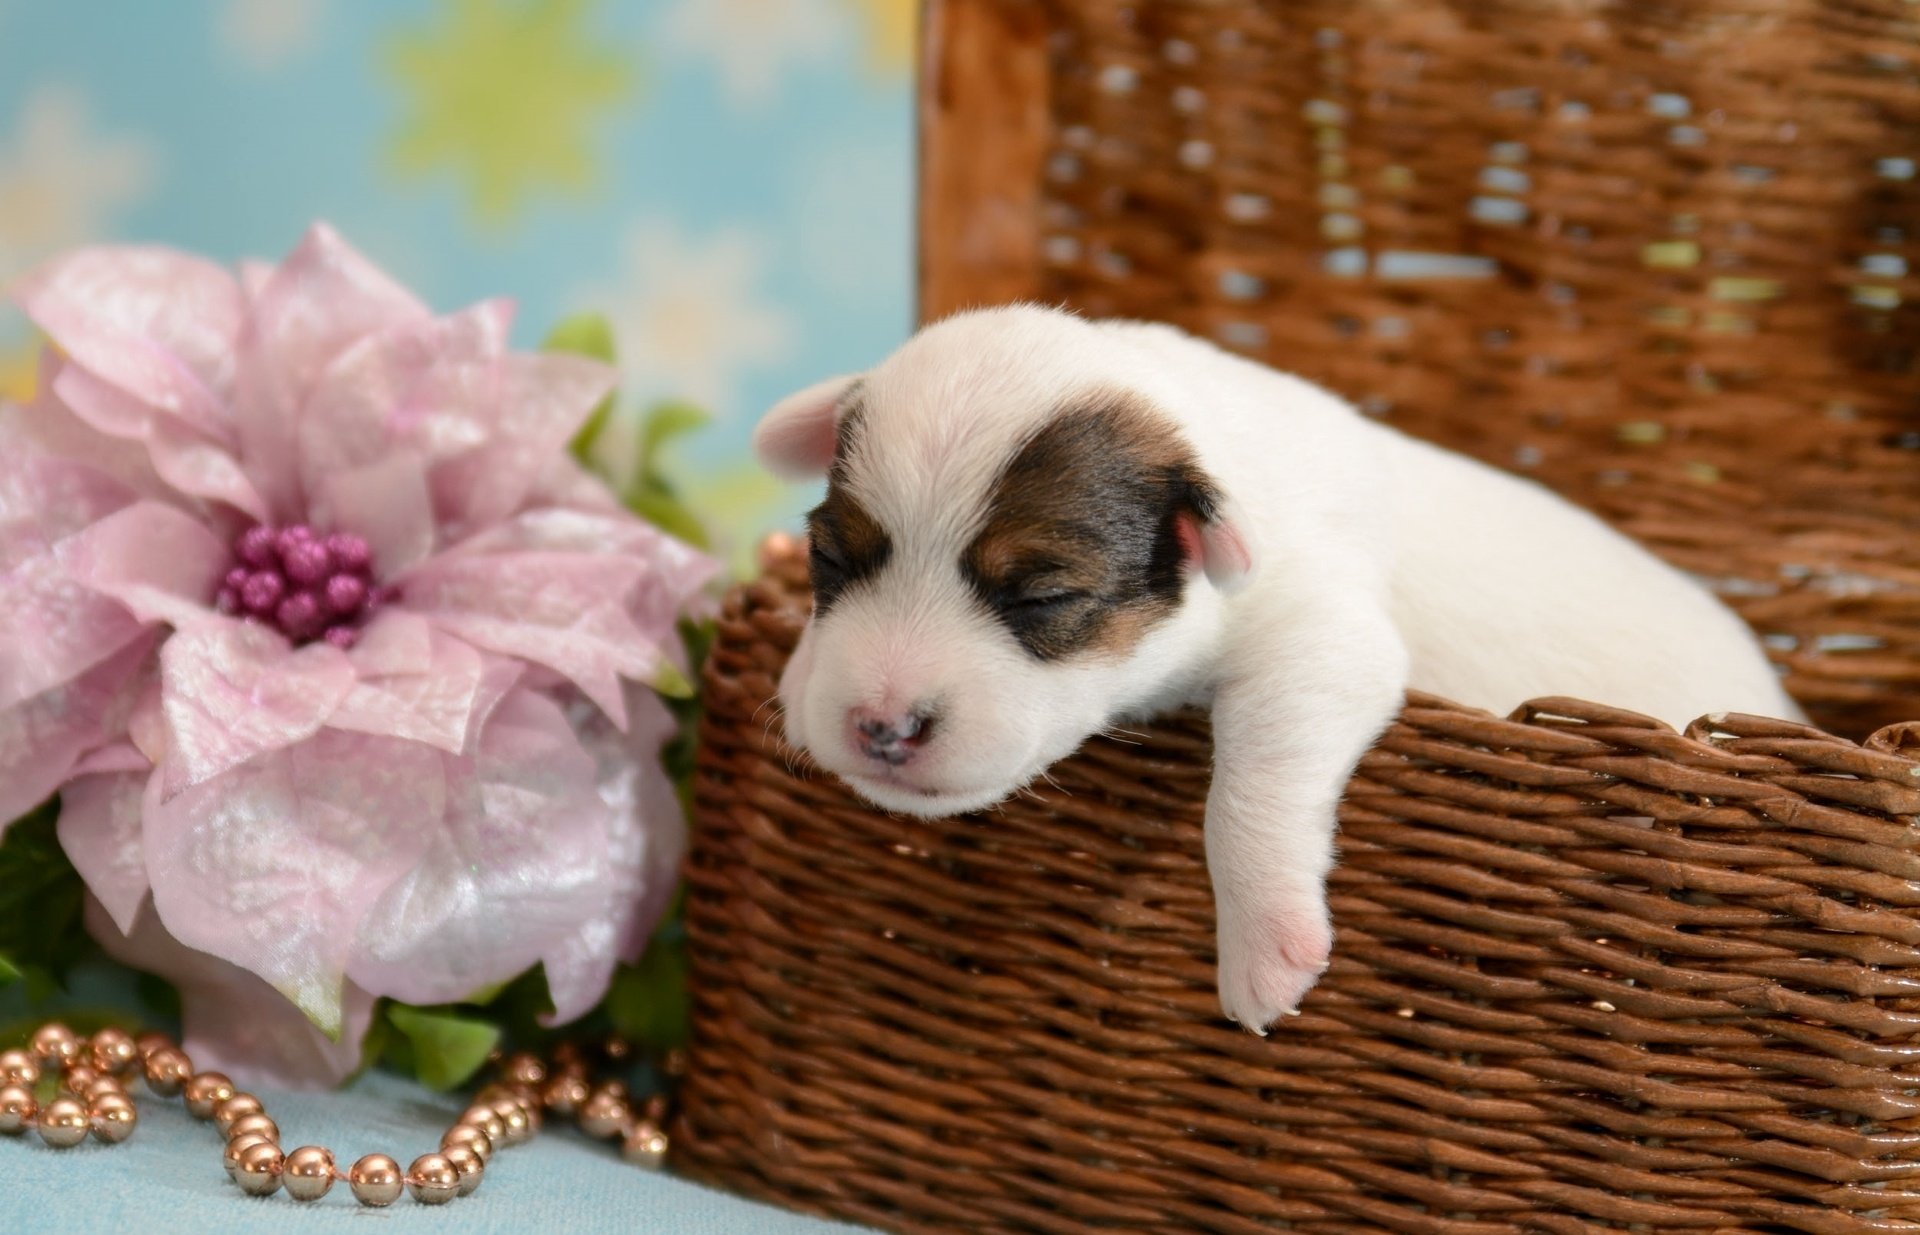 dog, Puppy, Baby, Crumb, Basket, Flower Wallpaper